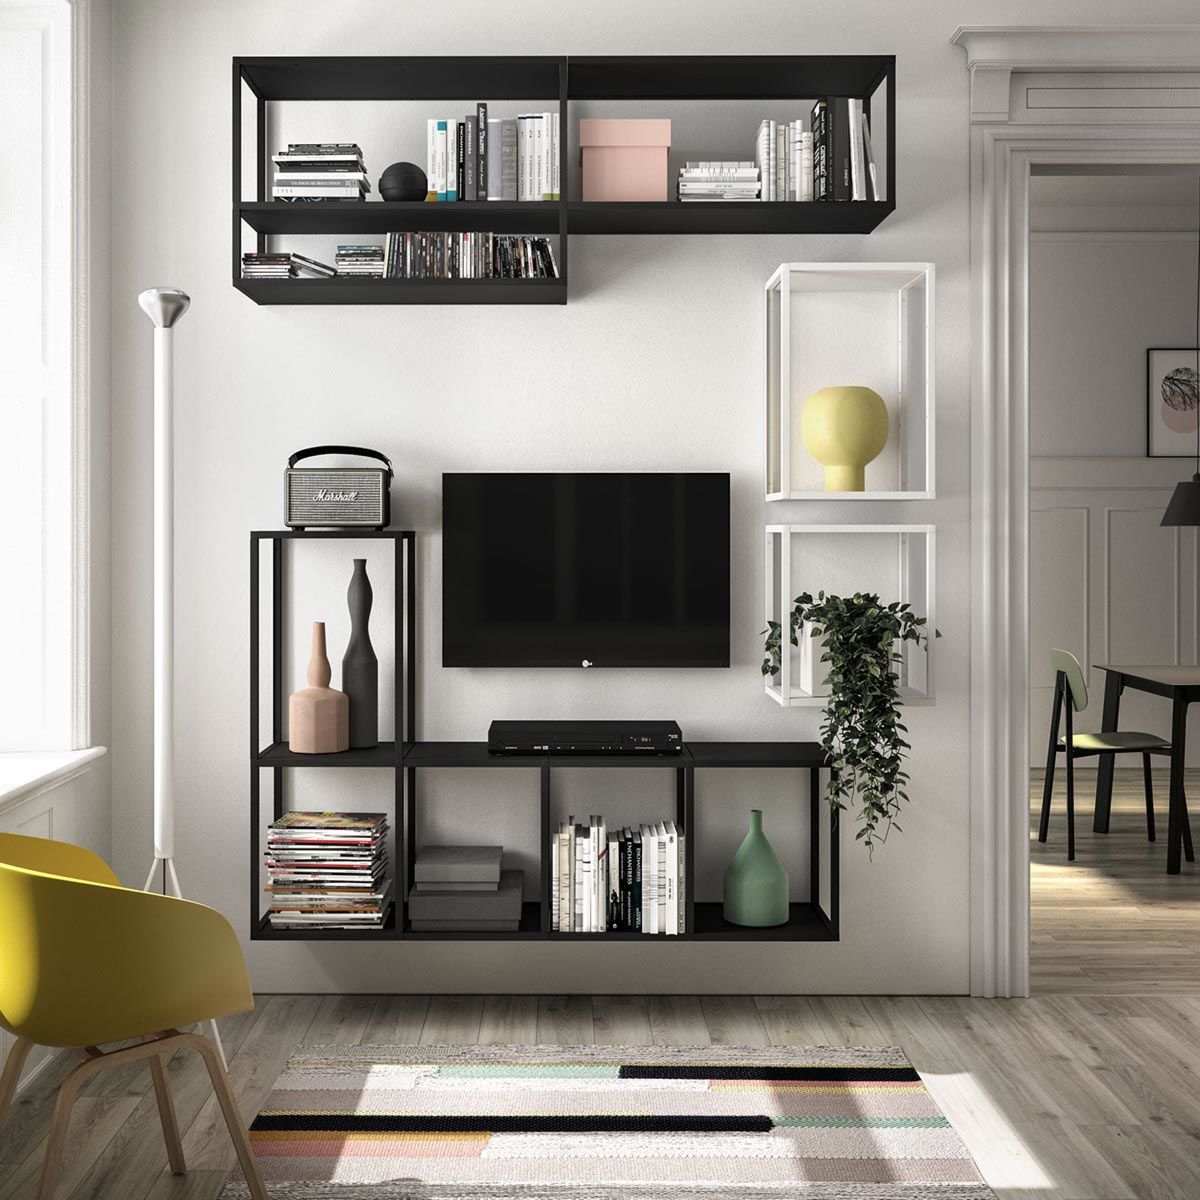 TAKI - Estructura decorativa para muebles y estantes